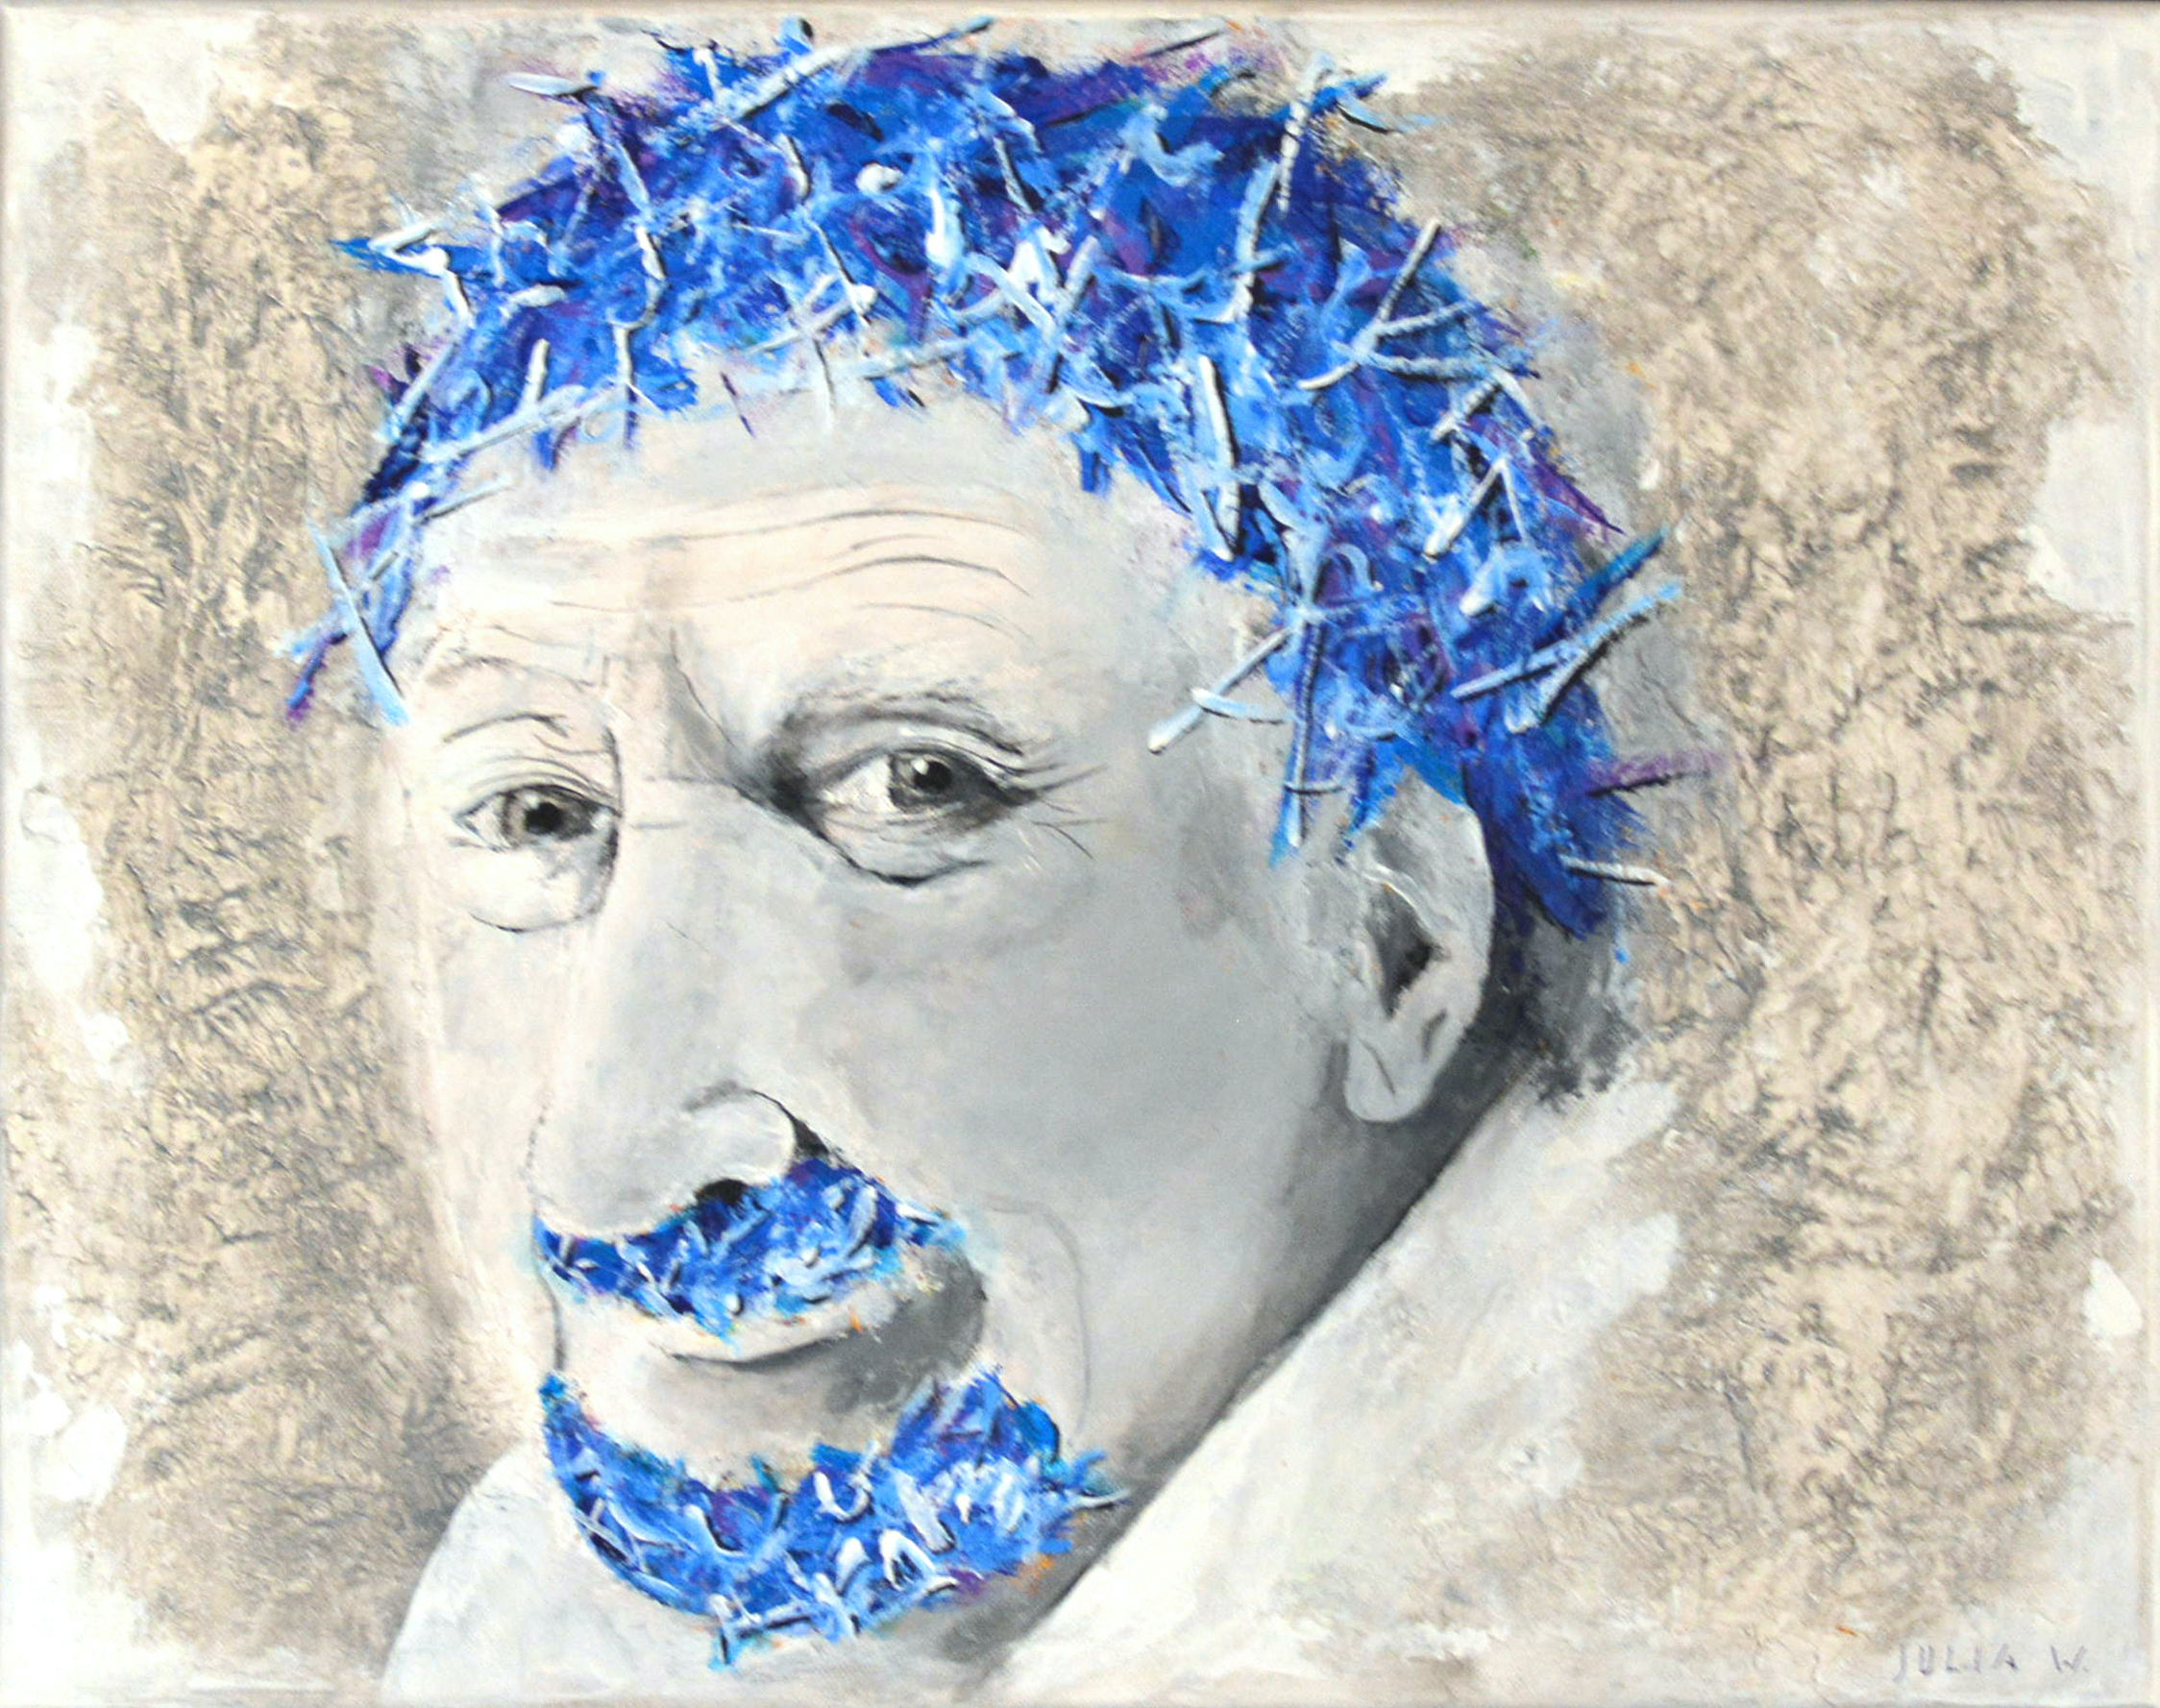 MEISTER - Acryl auf Leinwand - 50x40cm - Die blauen Haare des alten Mannes stechen zuerst ins Auge. Dahinter verbirgt sich das Portrait eines Künstlers.